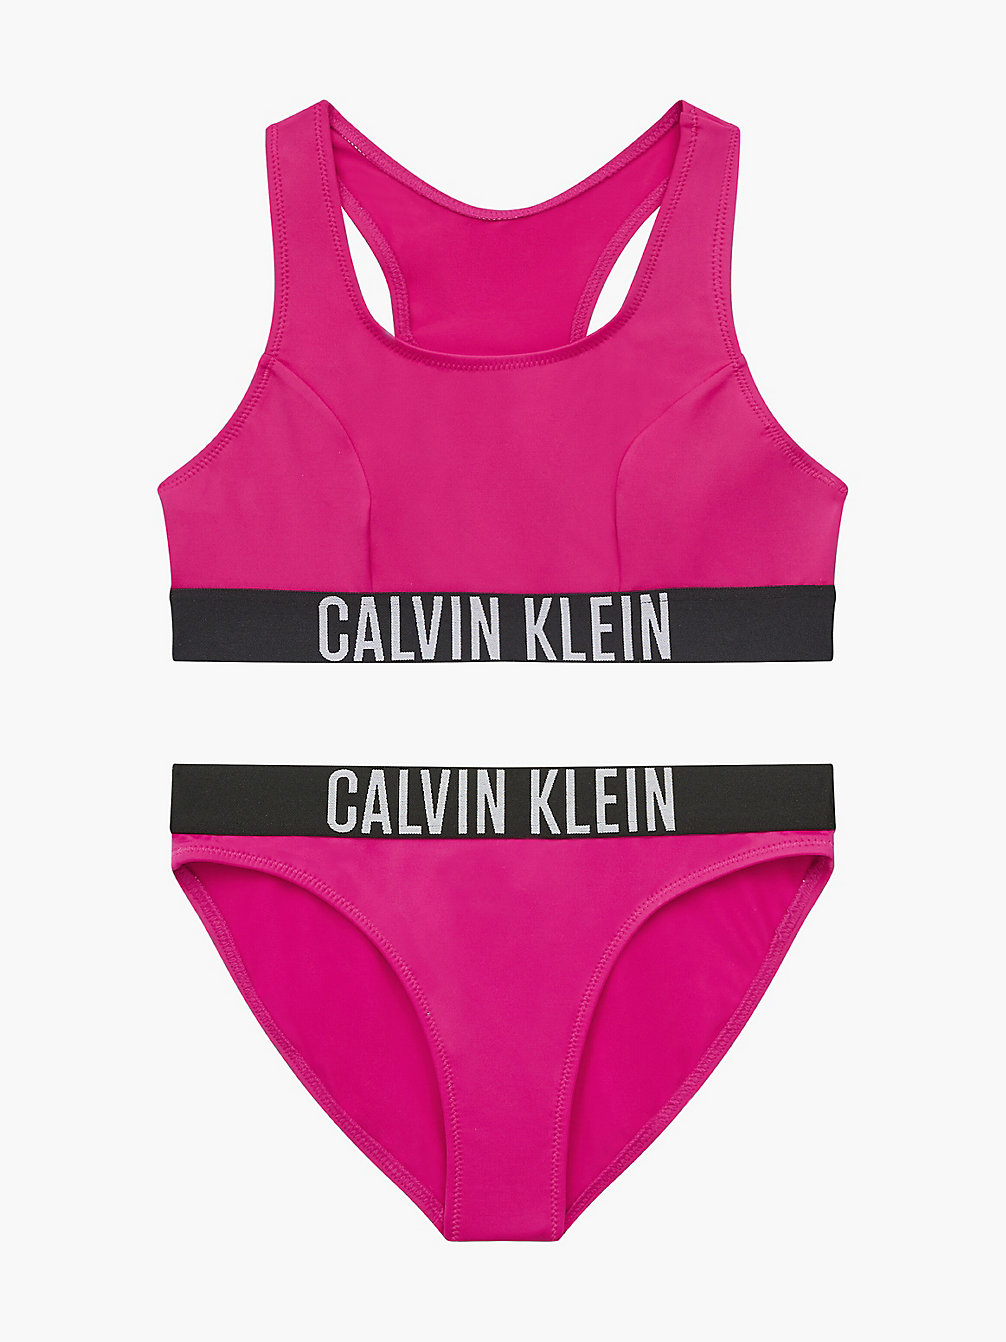 Bikini Con Corpiño Para Niña - Intense Power > ROYAL PINK > undefined girls > Calvin Klein